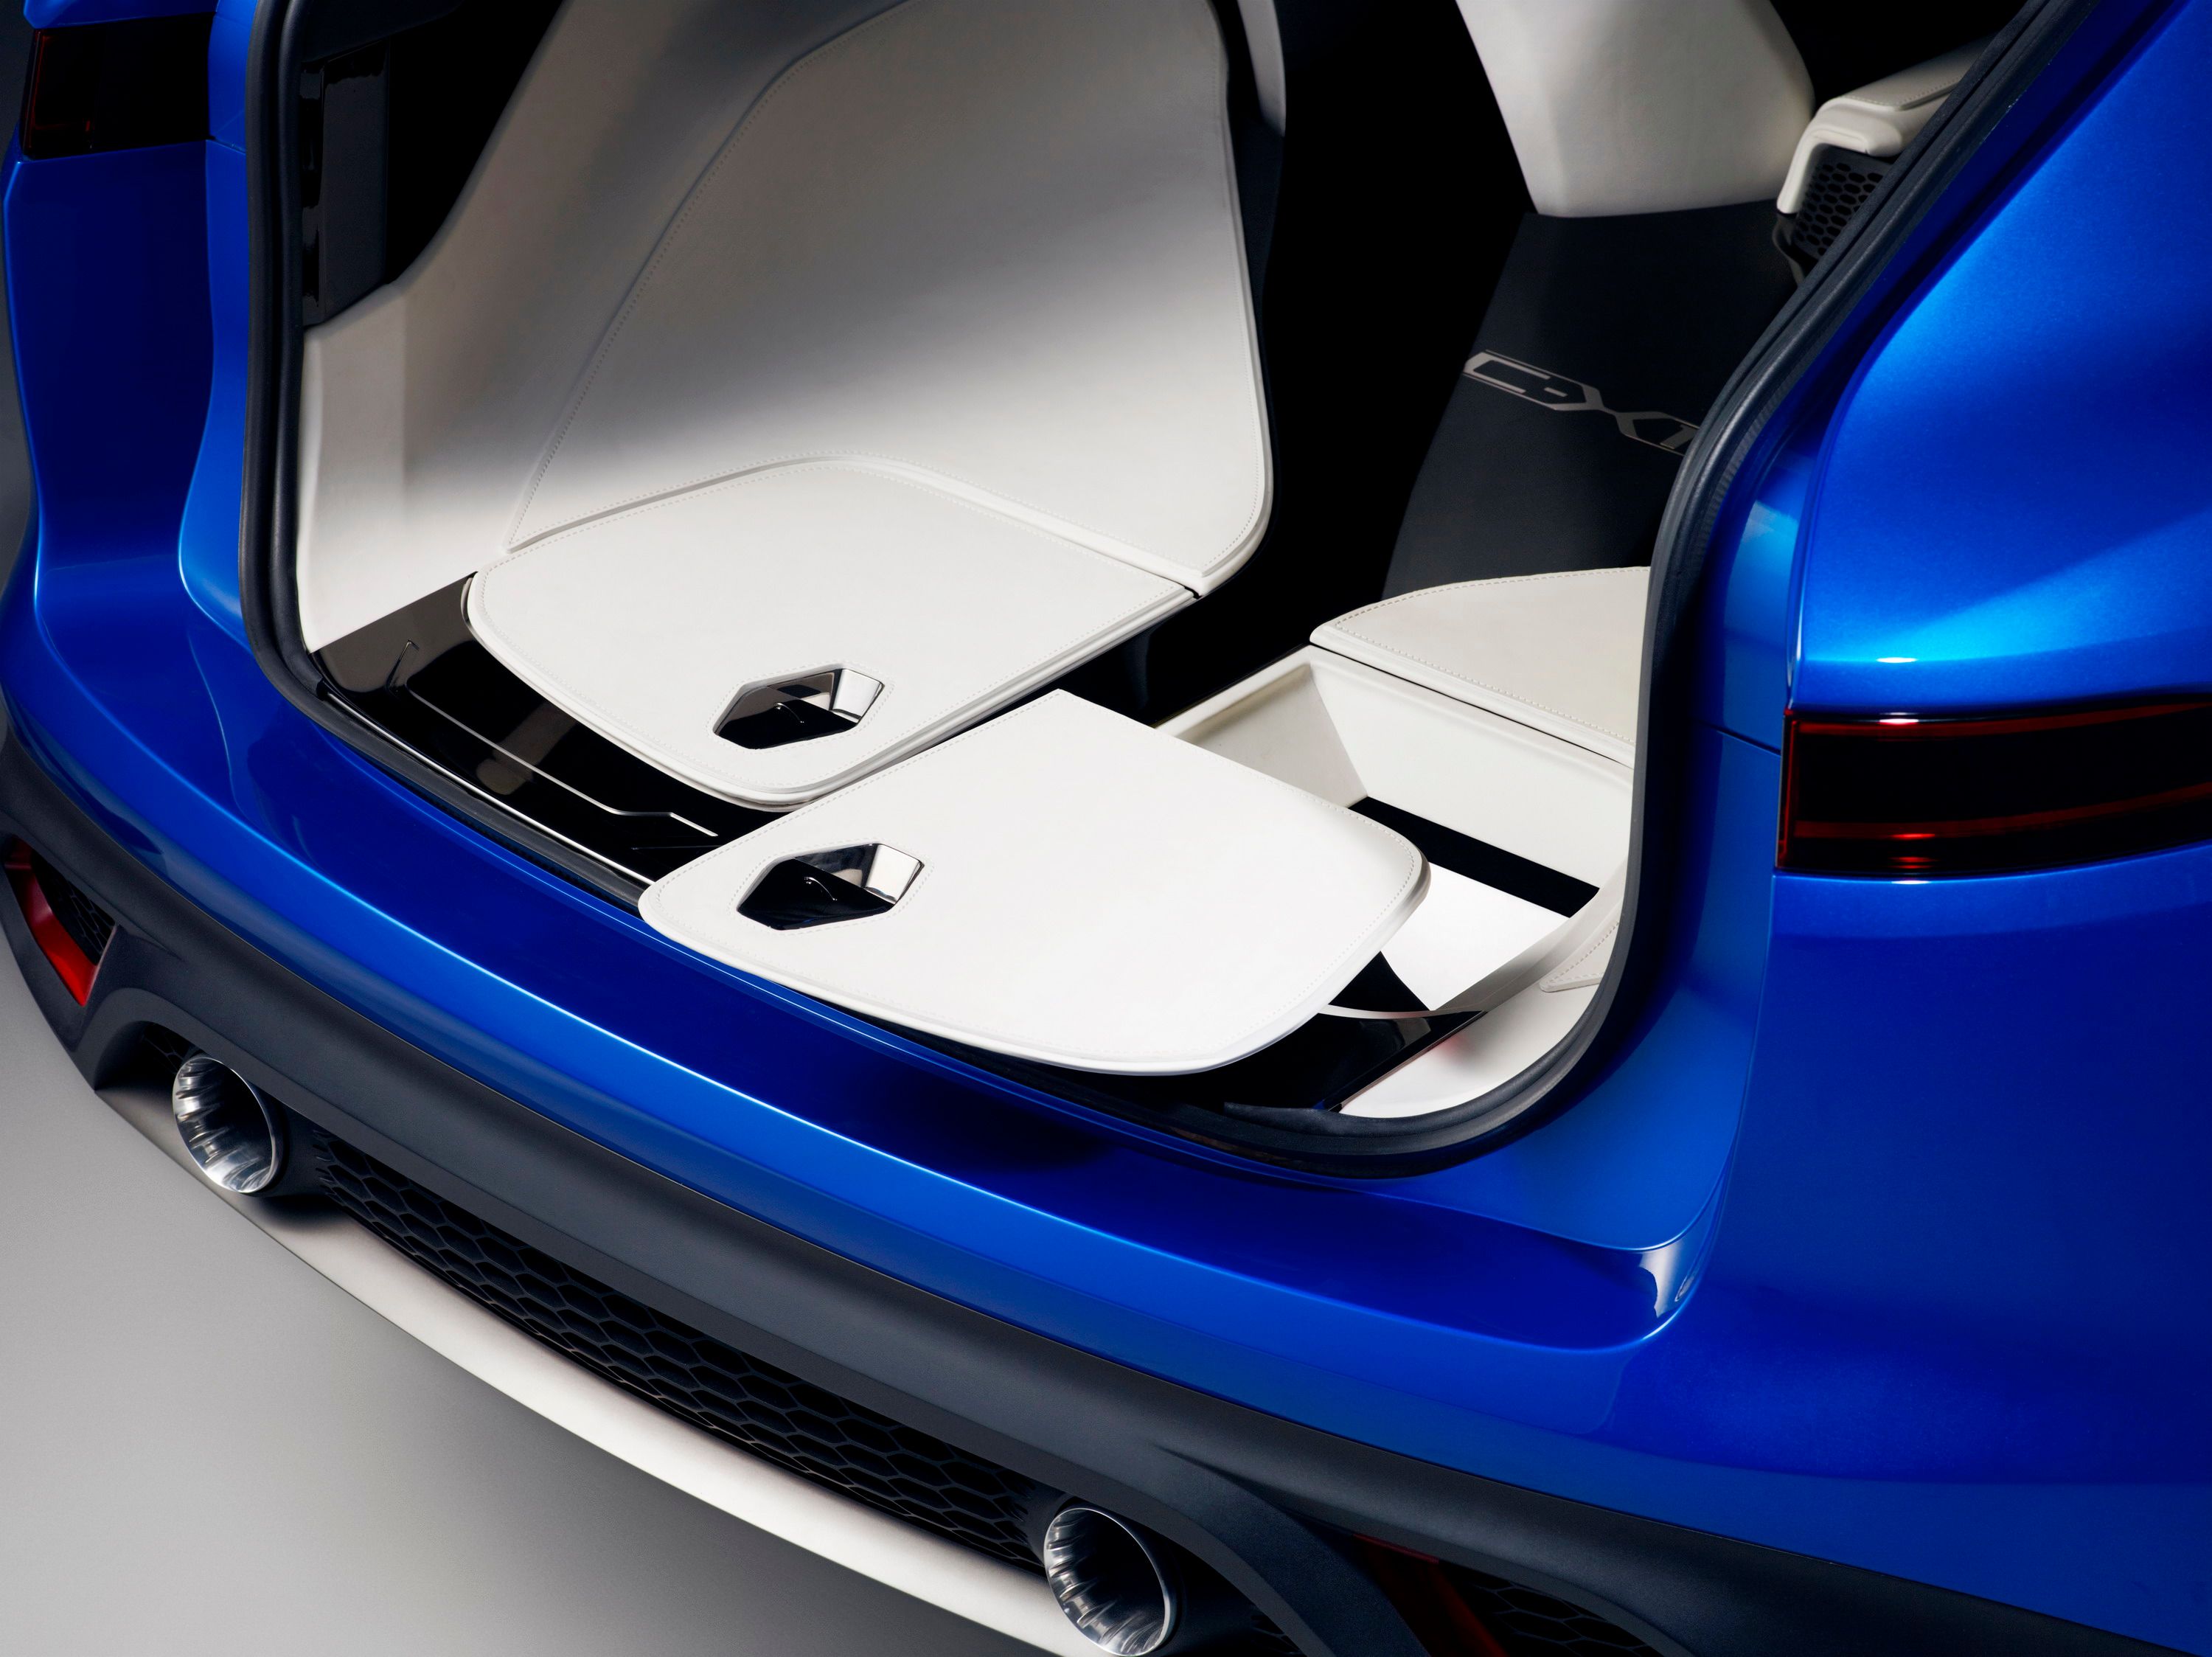 2014 Jaguar C-X17 Concept